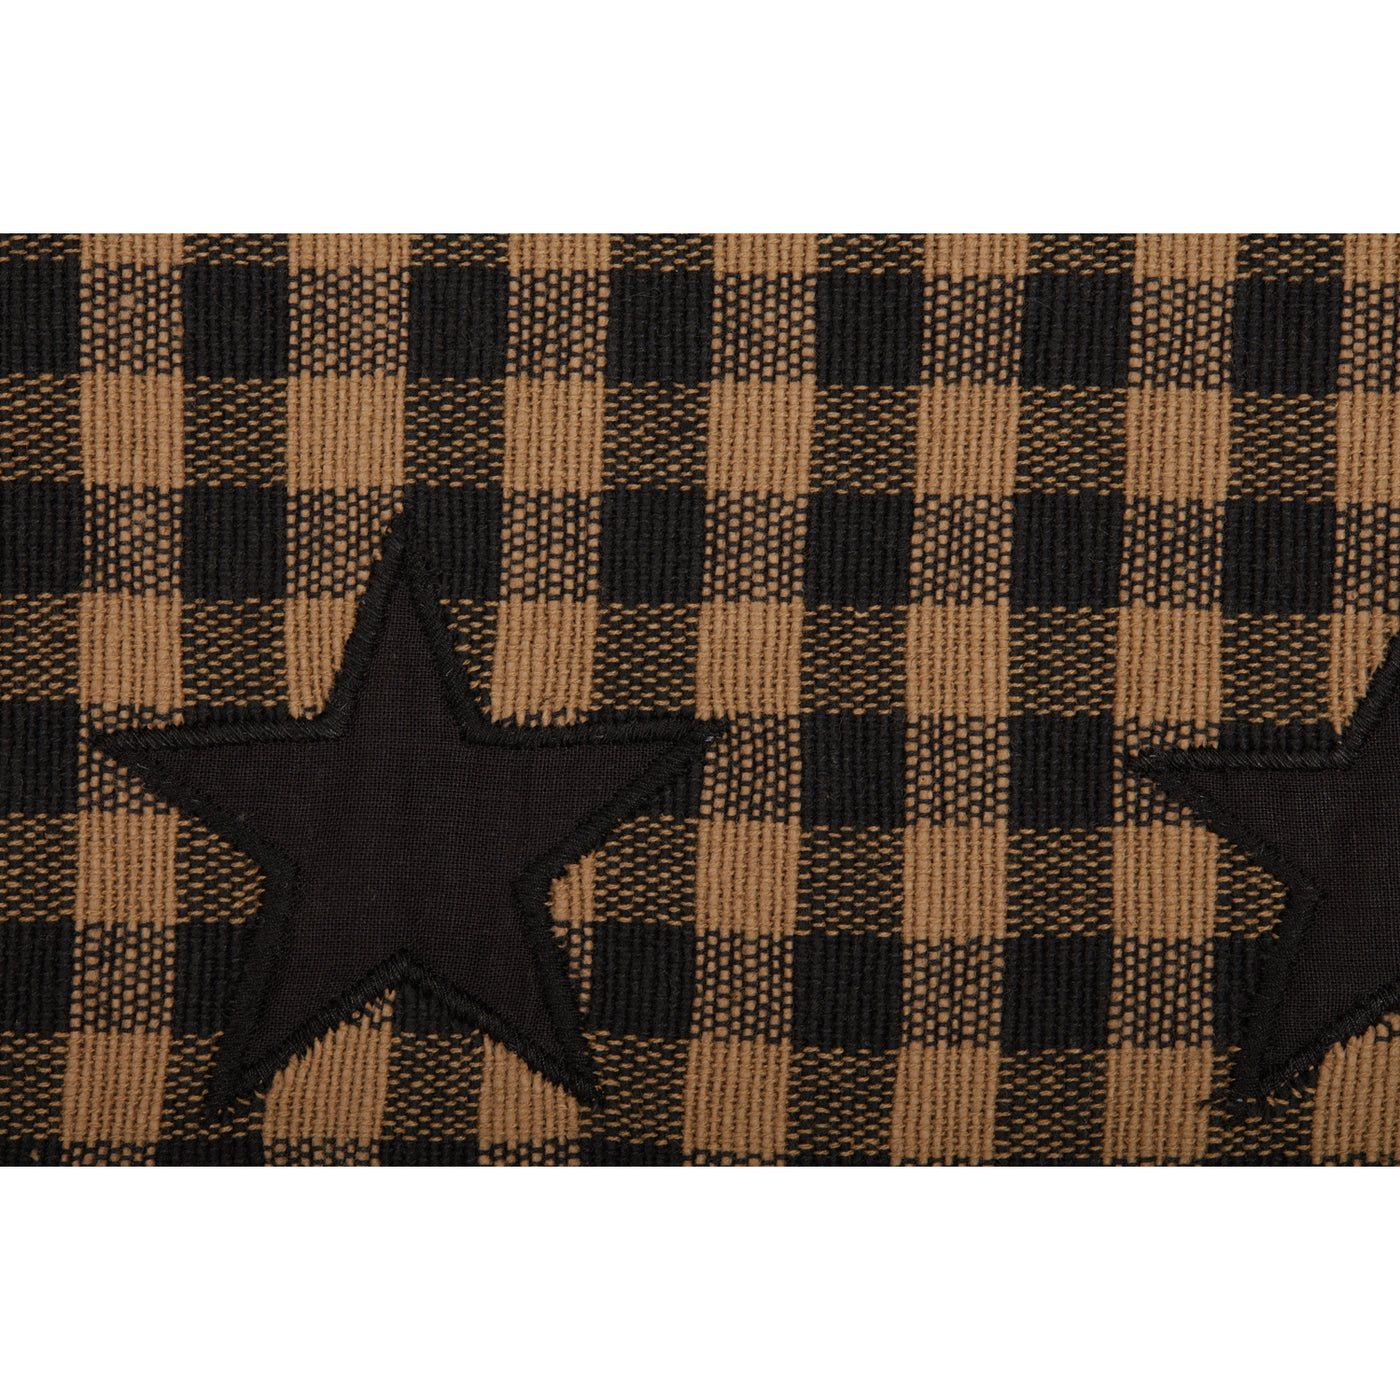 Black Star Primitive Woven Table Runner 13" x 72"